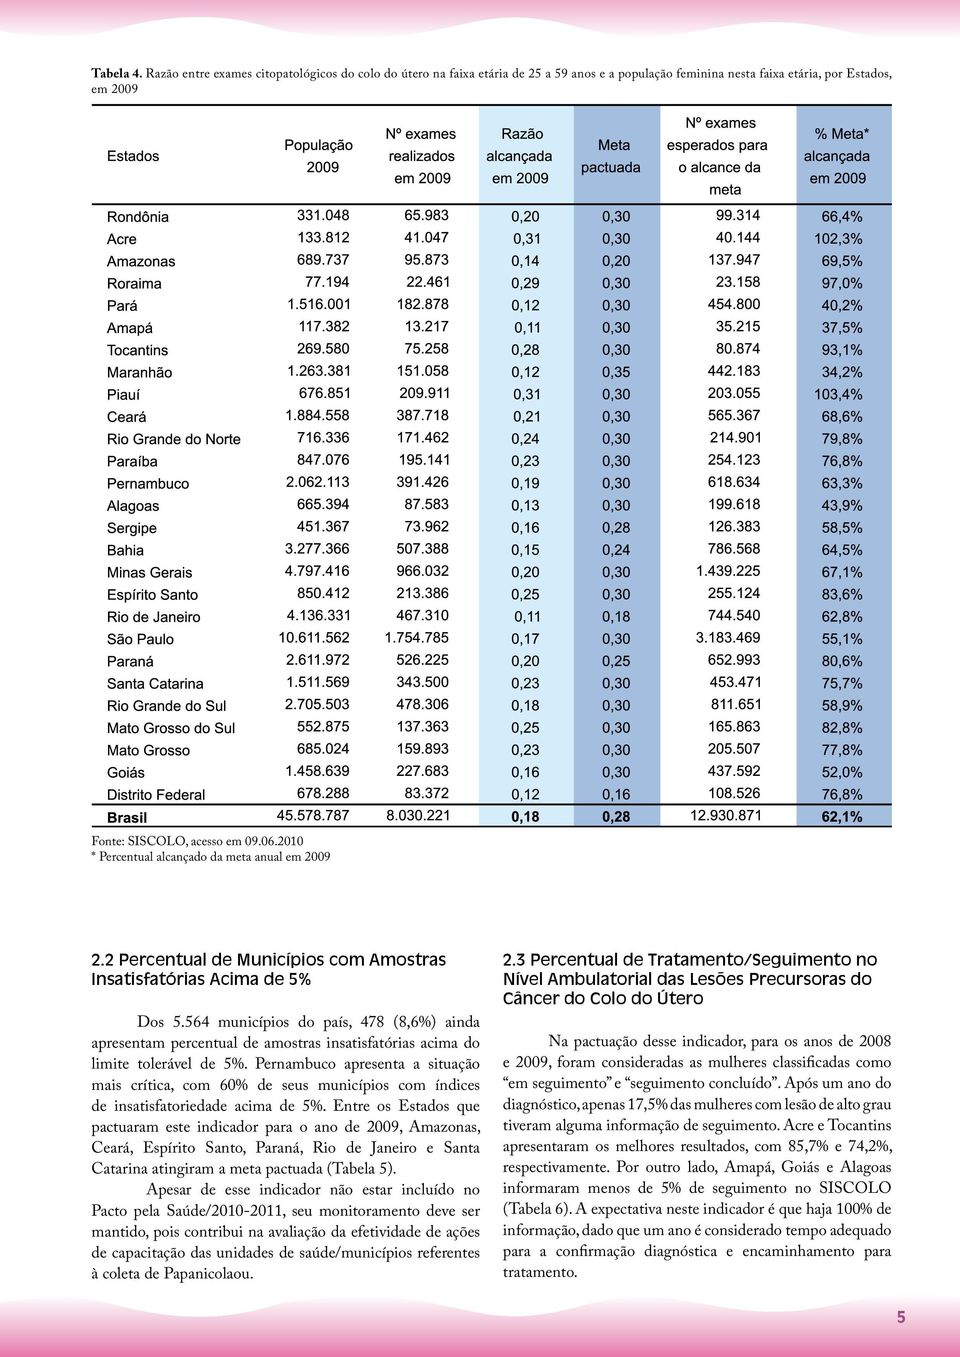 564 municípios do país, 478 (8,6%) ainda apresentam percentual de amostras insatisfatórias acima do limite tolerável de 5%.